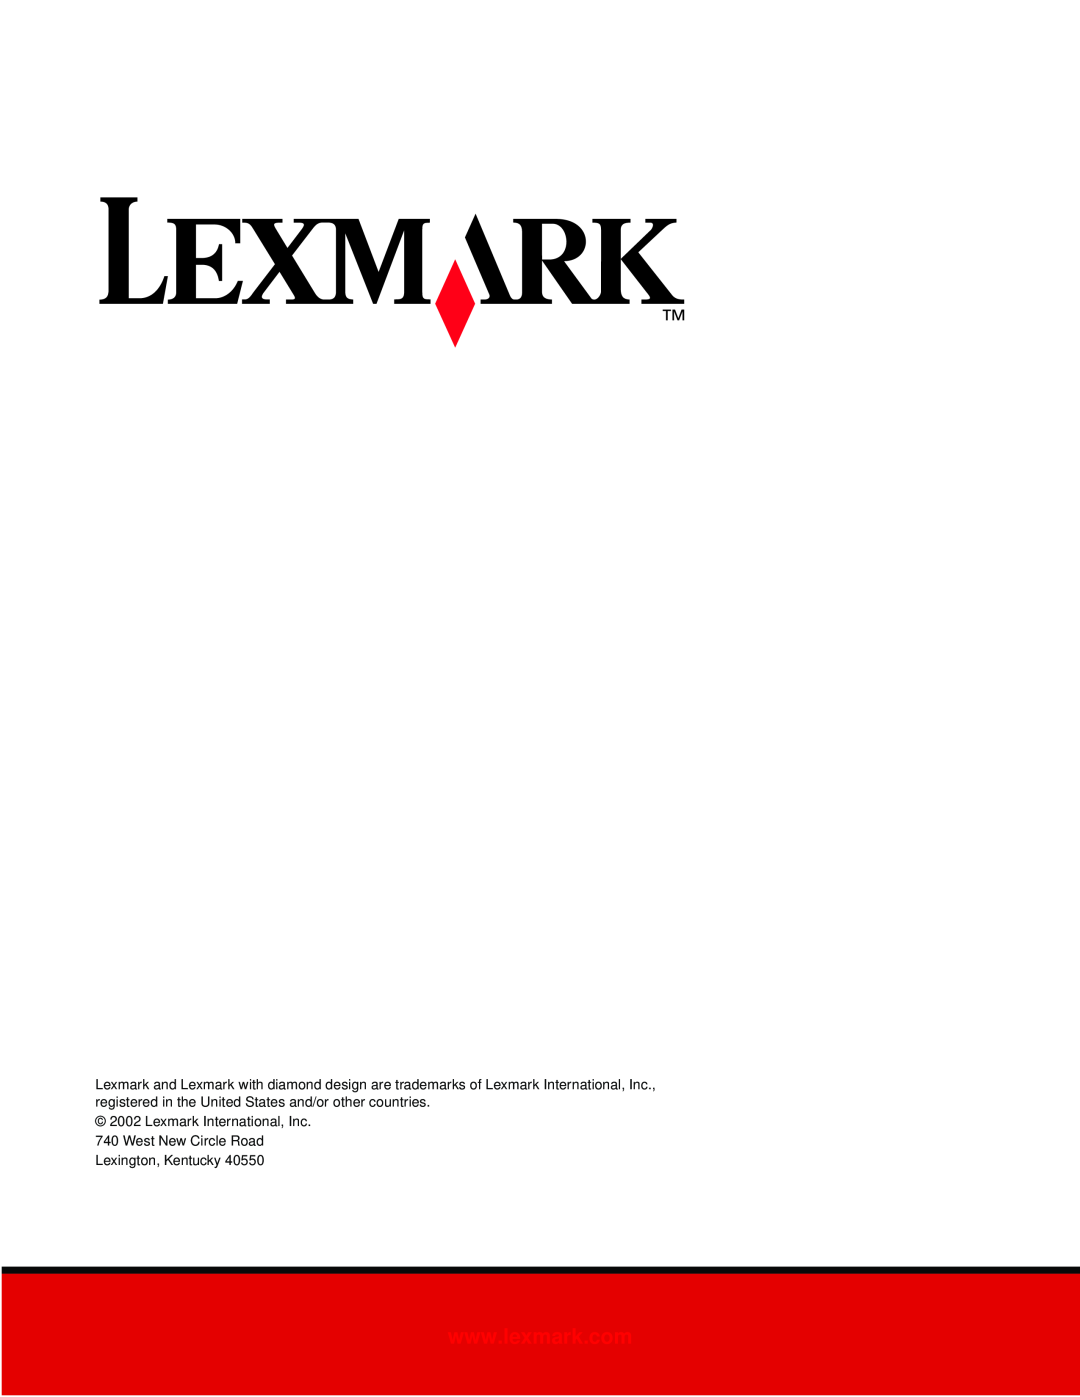 Lexmark 3200 manual Lexmark International, Inc 740 West New Circle Road, Lexington, Kentucky 